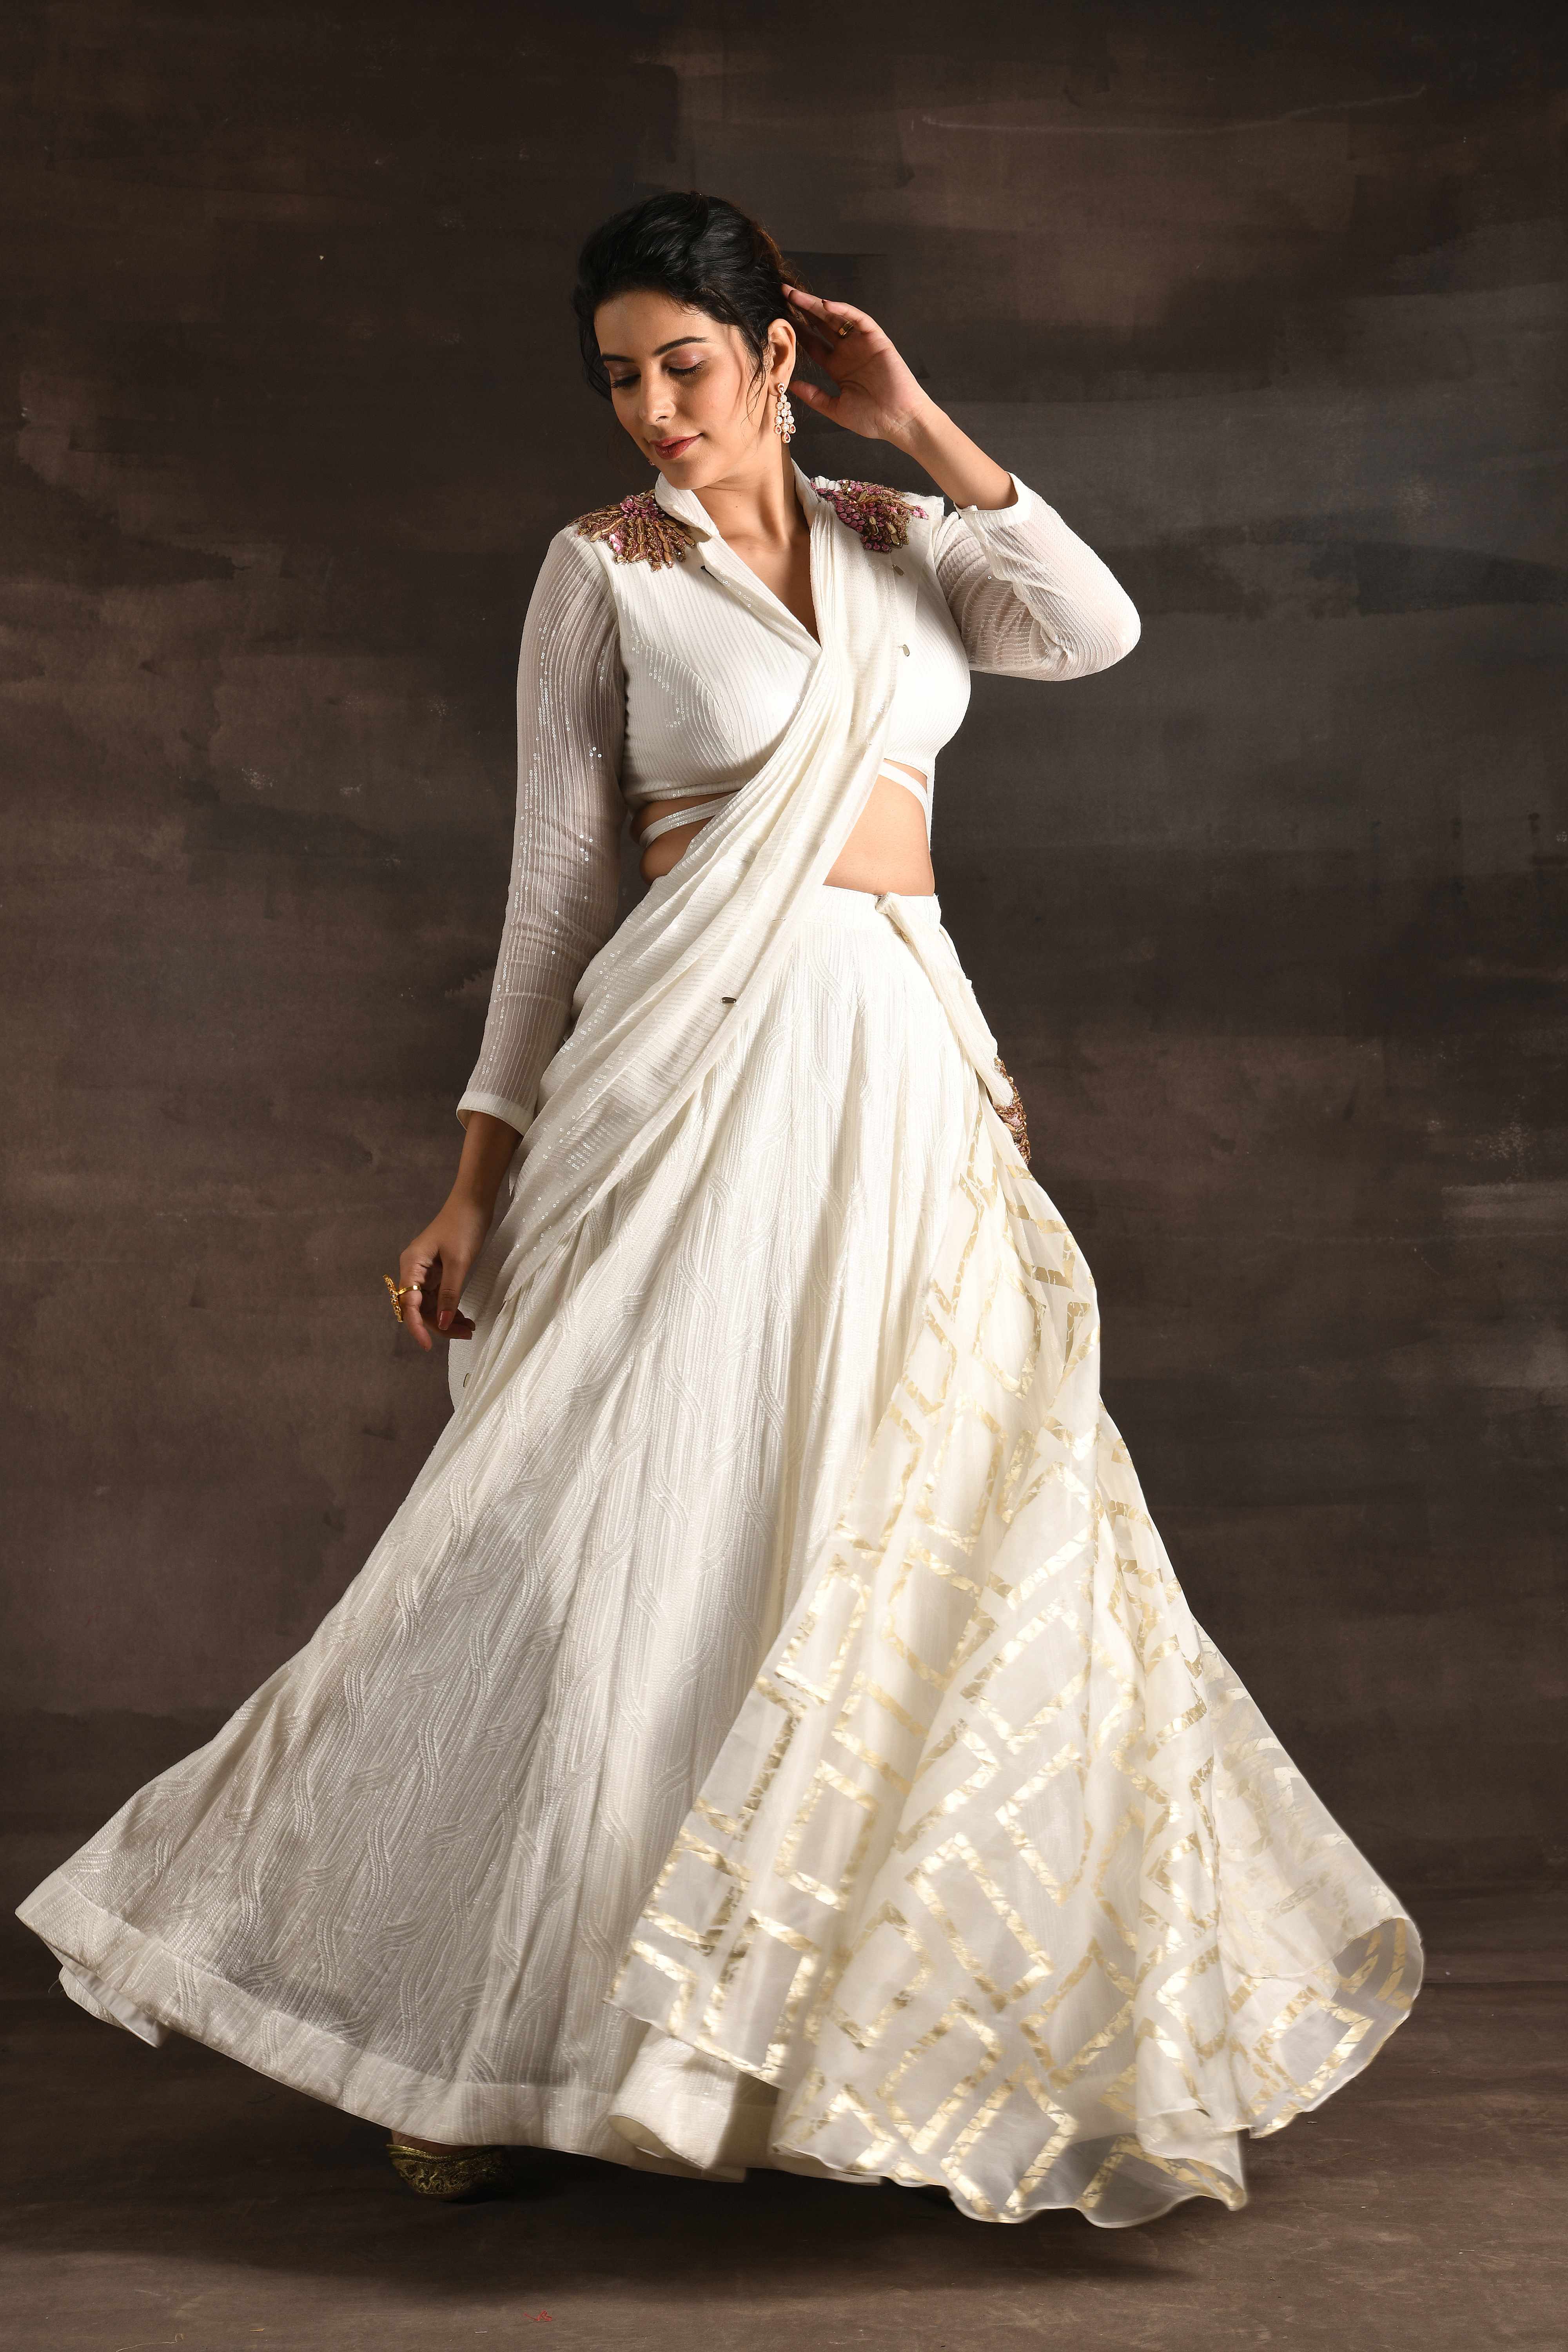 Designer Lehenga For Wedding At Cheapest Price | Half Saree Designs |  Lehenga choli | Lehenga saree - YouTube